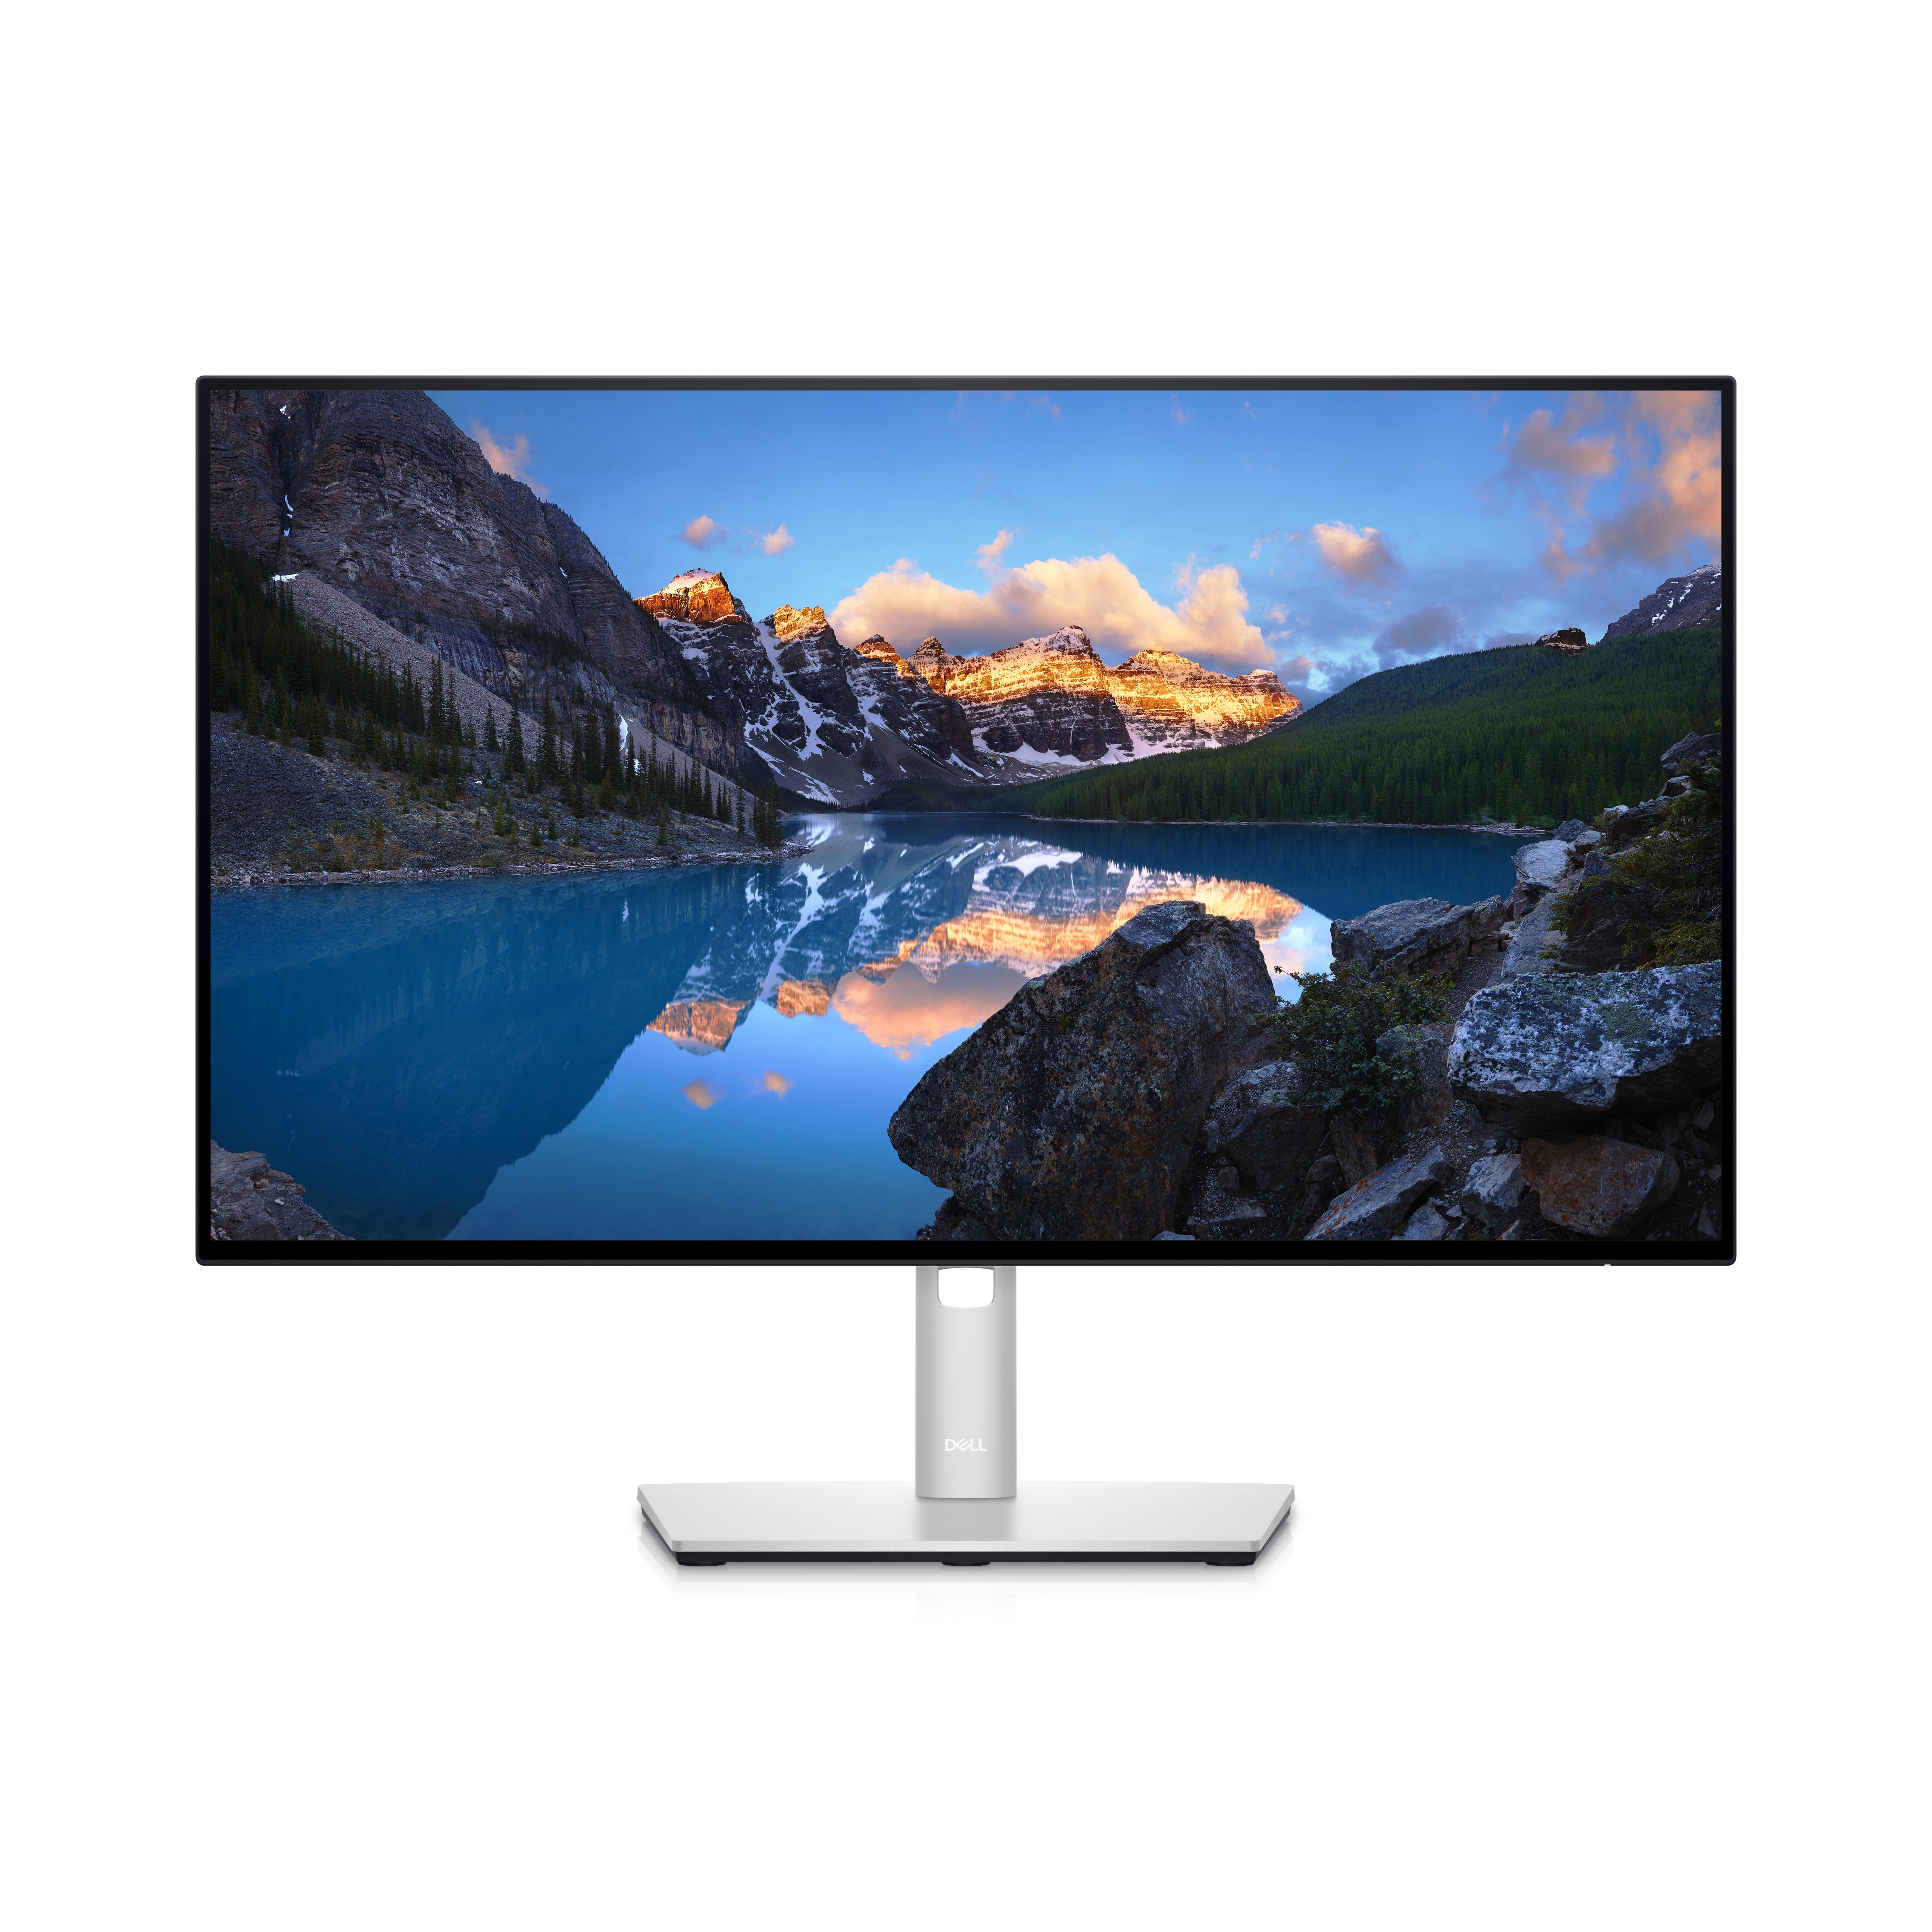 Dell UltraSharp 24 Monitor – U2422H - 60,5 cm (23.8 Zoll) - 1920 x 1080 Pixel - Full HD - LCD - 8 ms - Silber